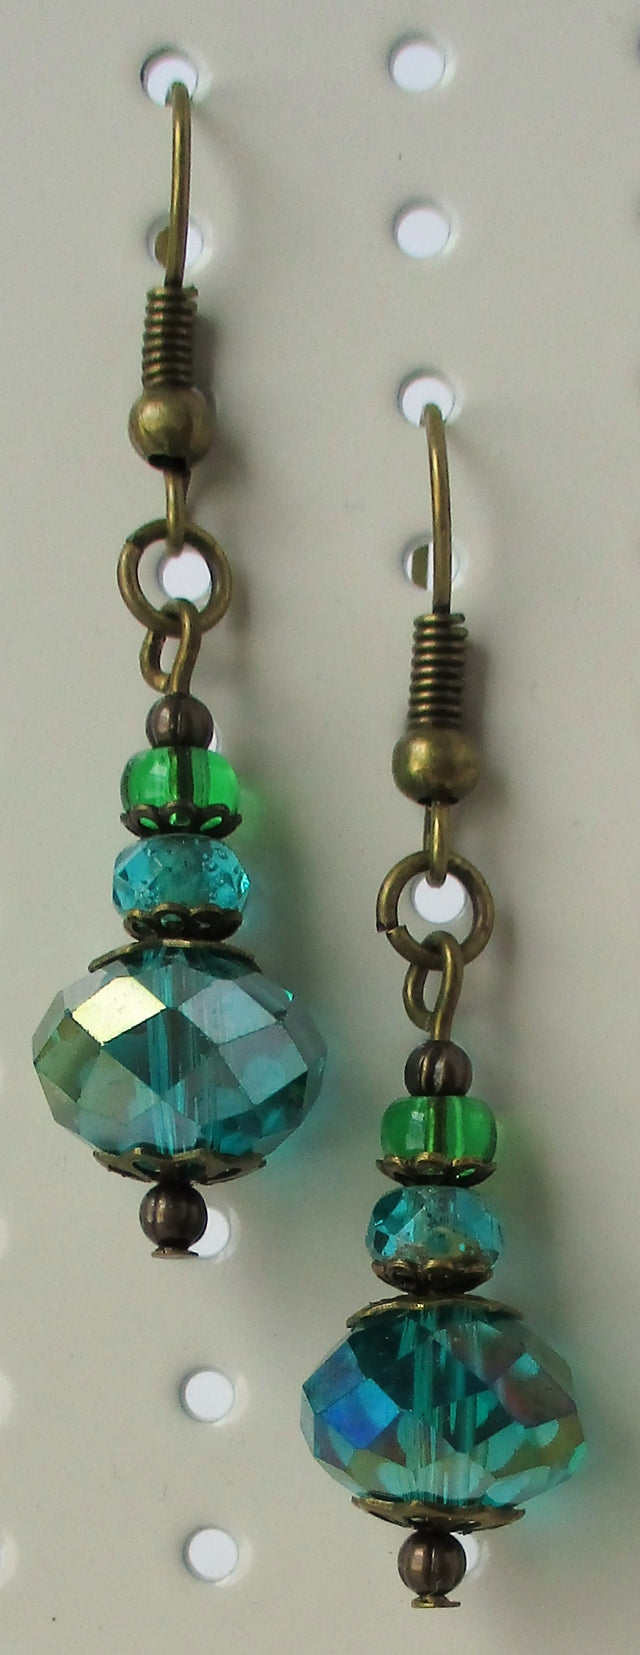 Green Beaded Earrings - Juicybeads Jewelry